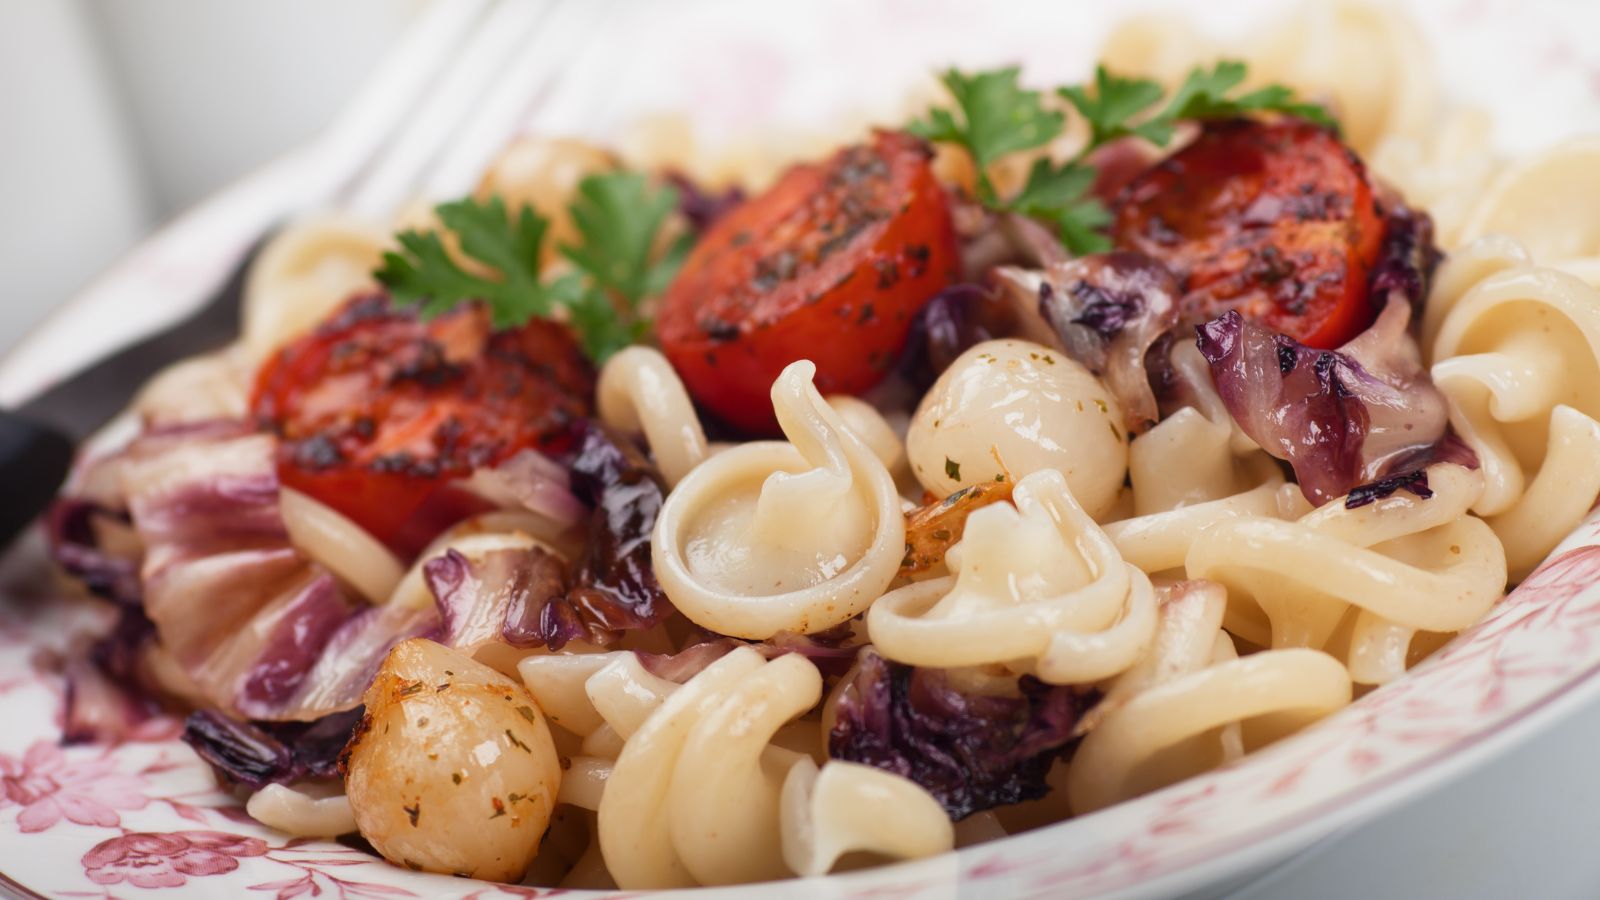  classic vegetarian pasta dish with cherry tomatoes and radicchio. 